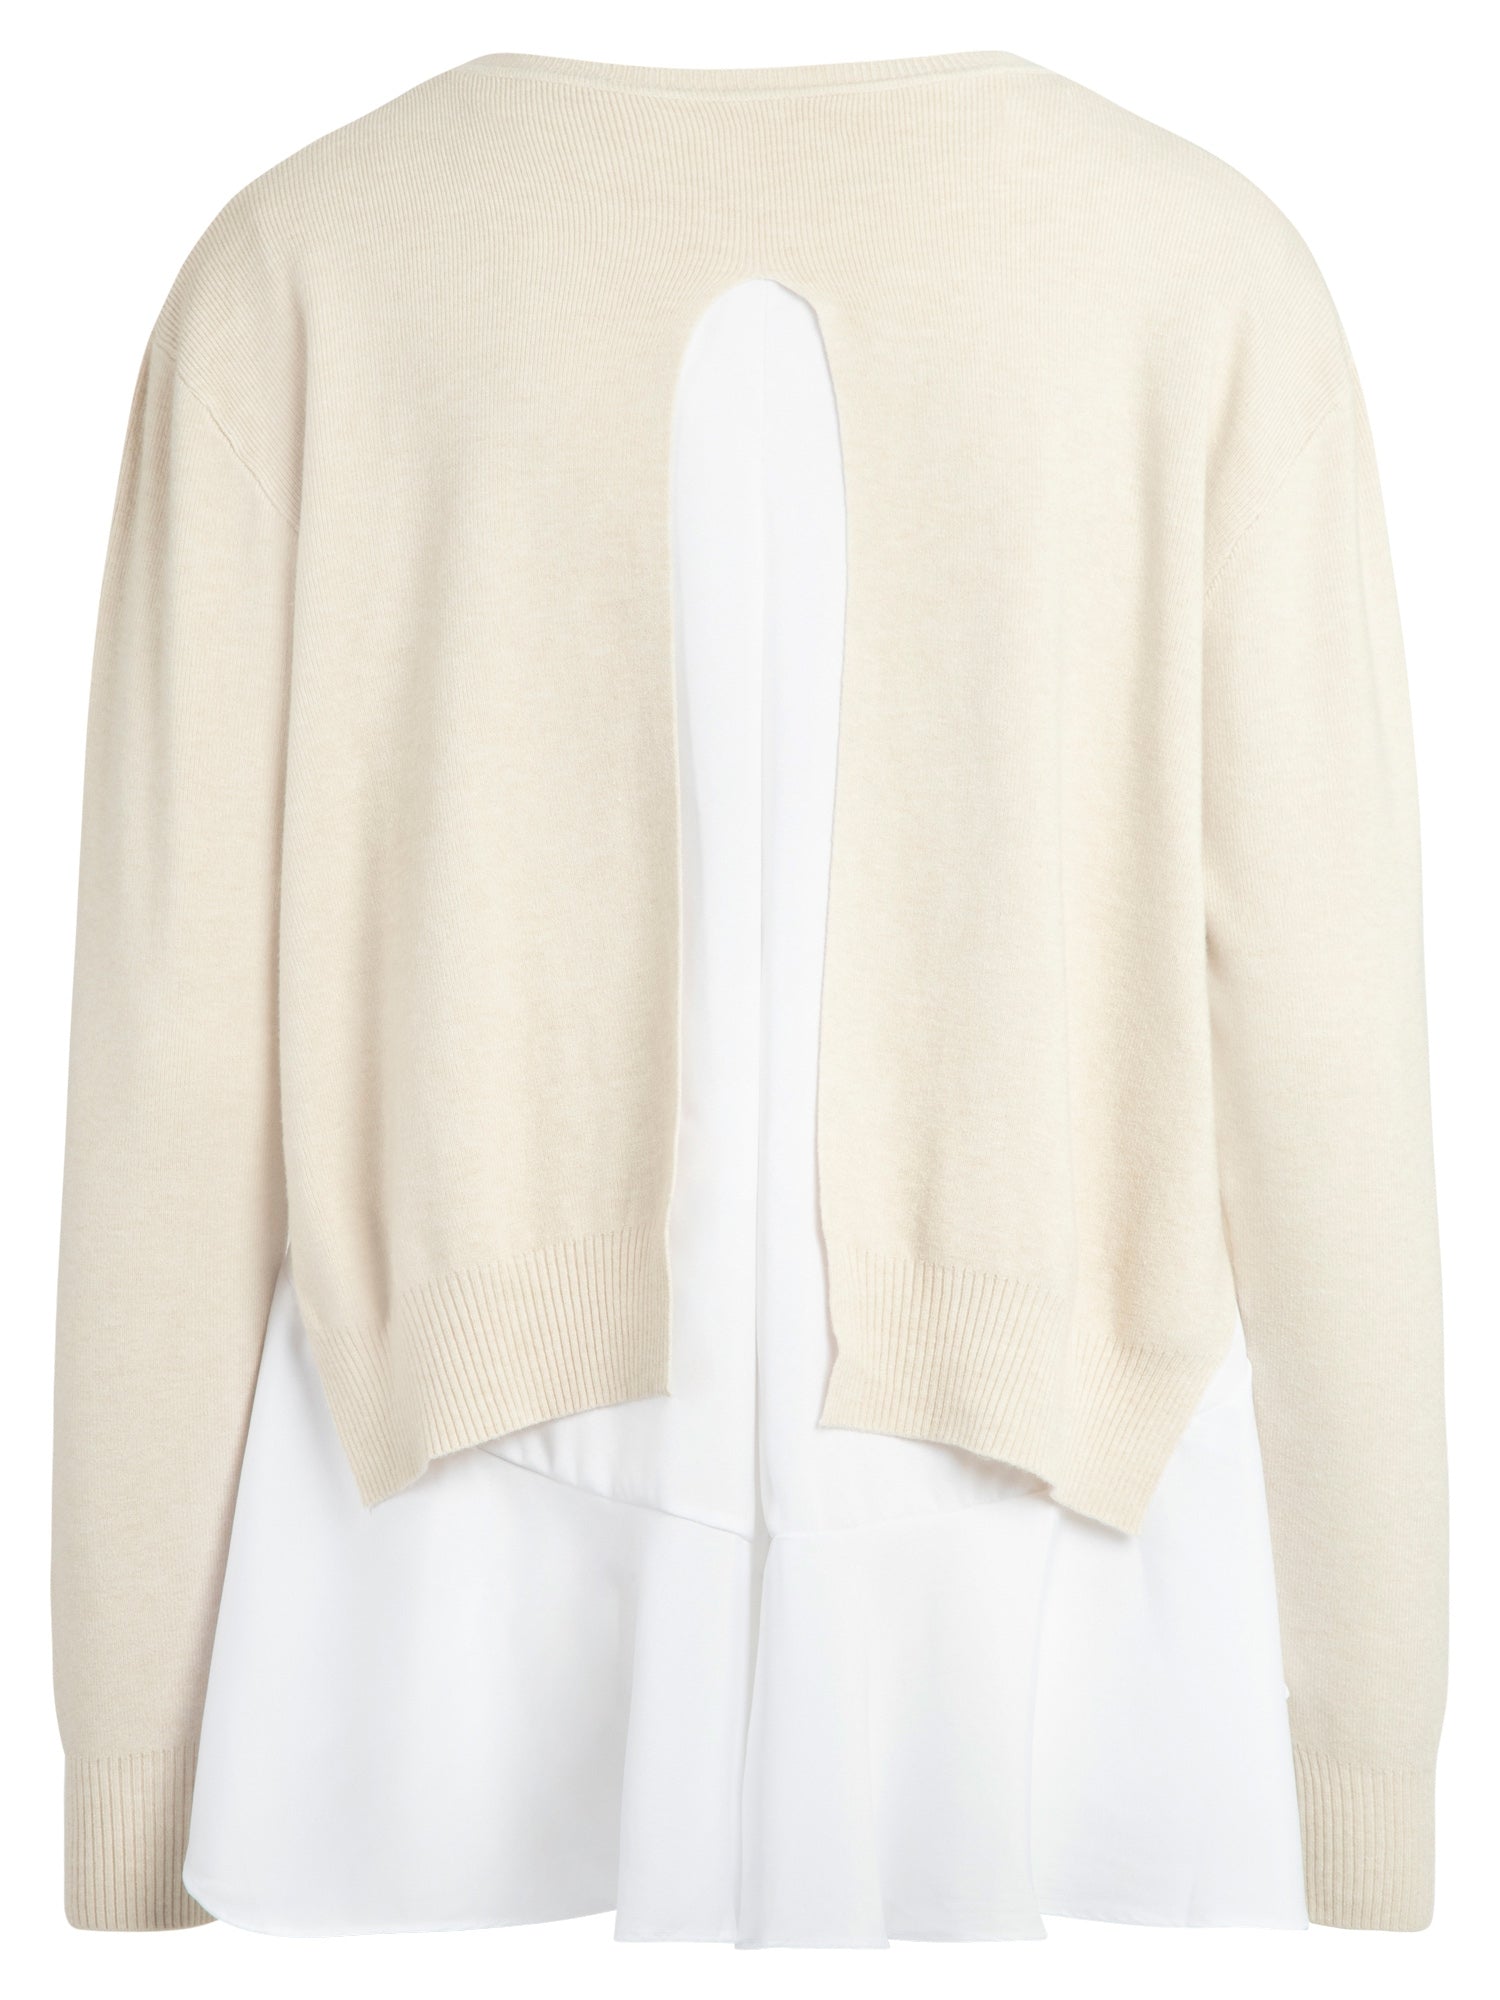 APART modischer Pullover, Strick, 2-in-1-Optik, Layering-Look, Bluse mit Volant, weiter Sc | beige